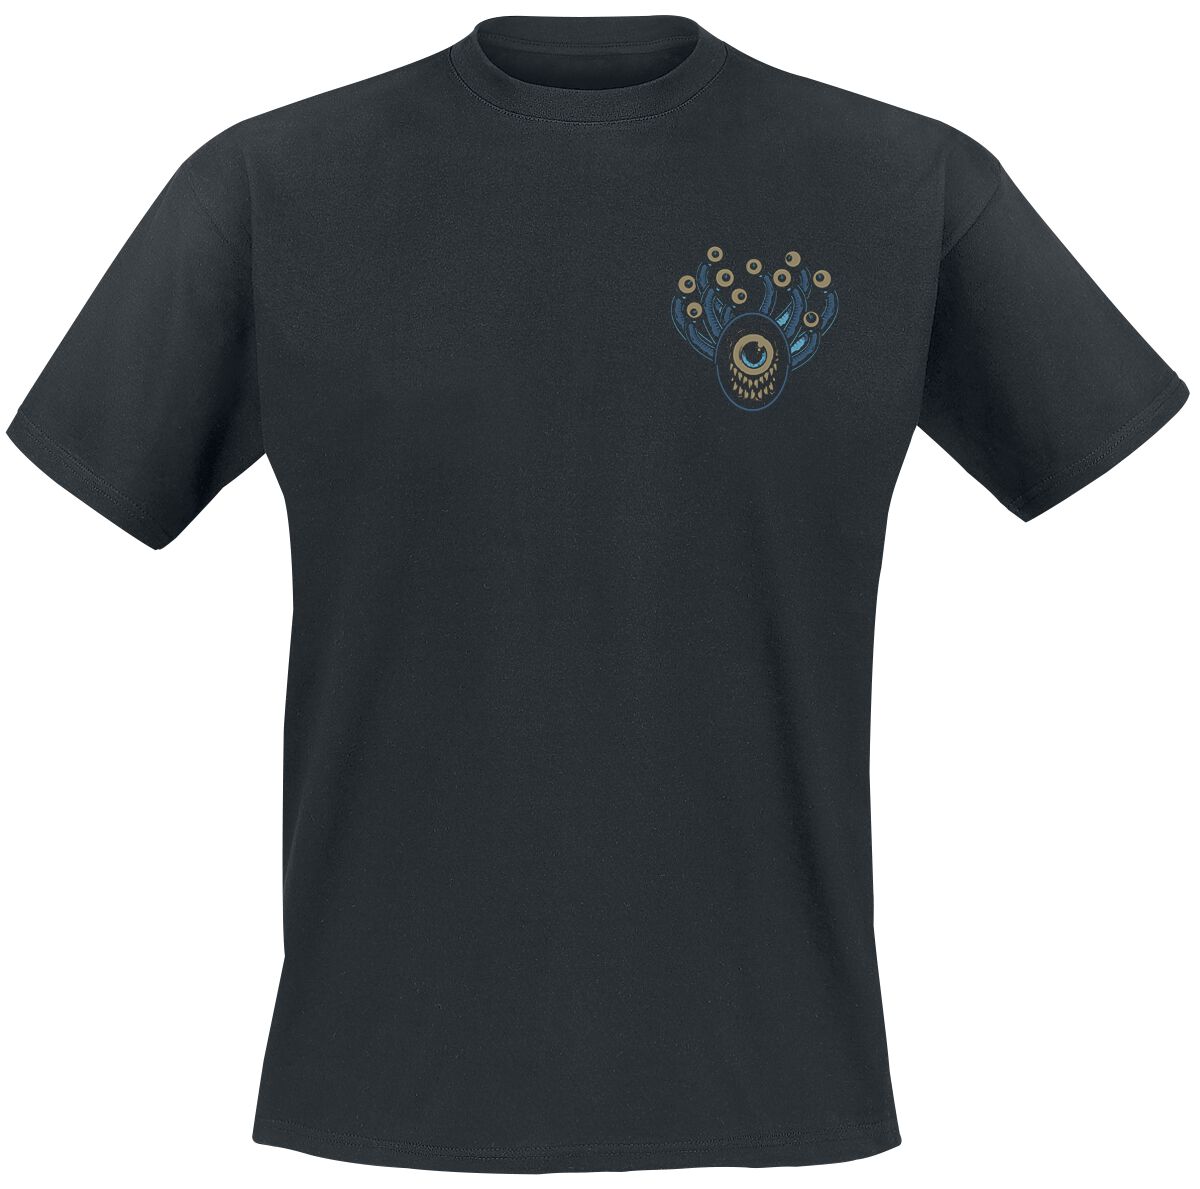 Dungeons and Dragons - Gaming T-Shirt - Hydro74 - Beholder - S bis XXL - für Männer - Größe M - schwarz  - EMP exklusives Merchandise!